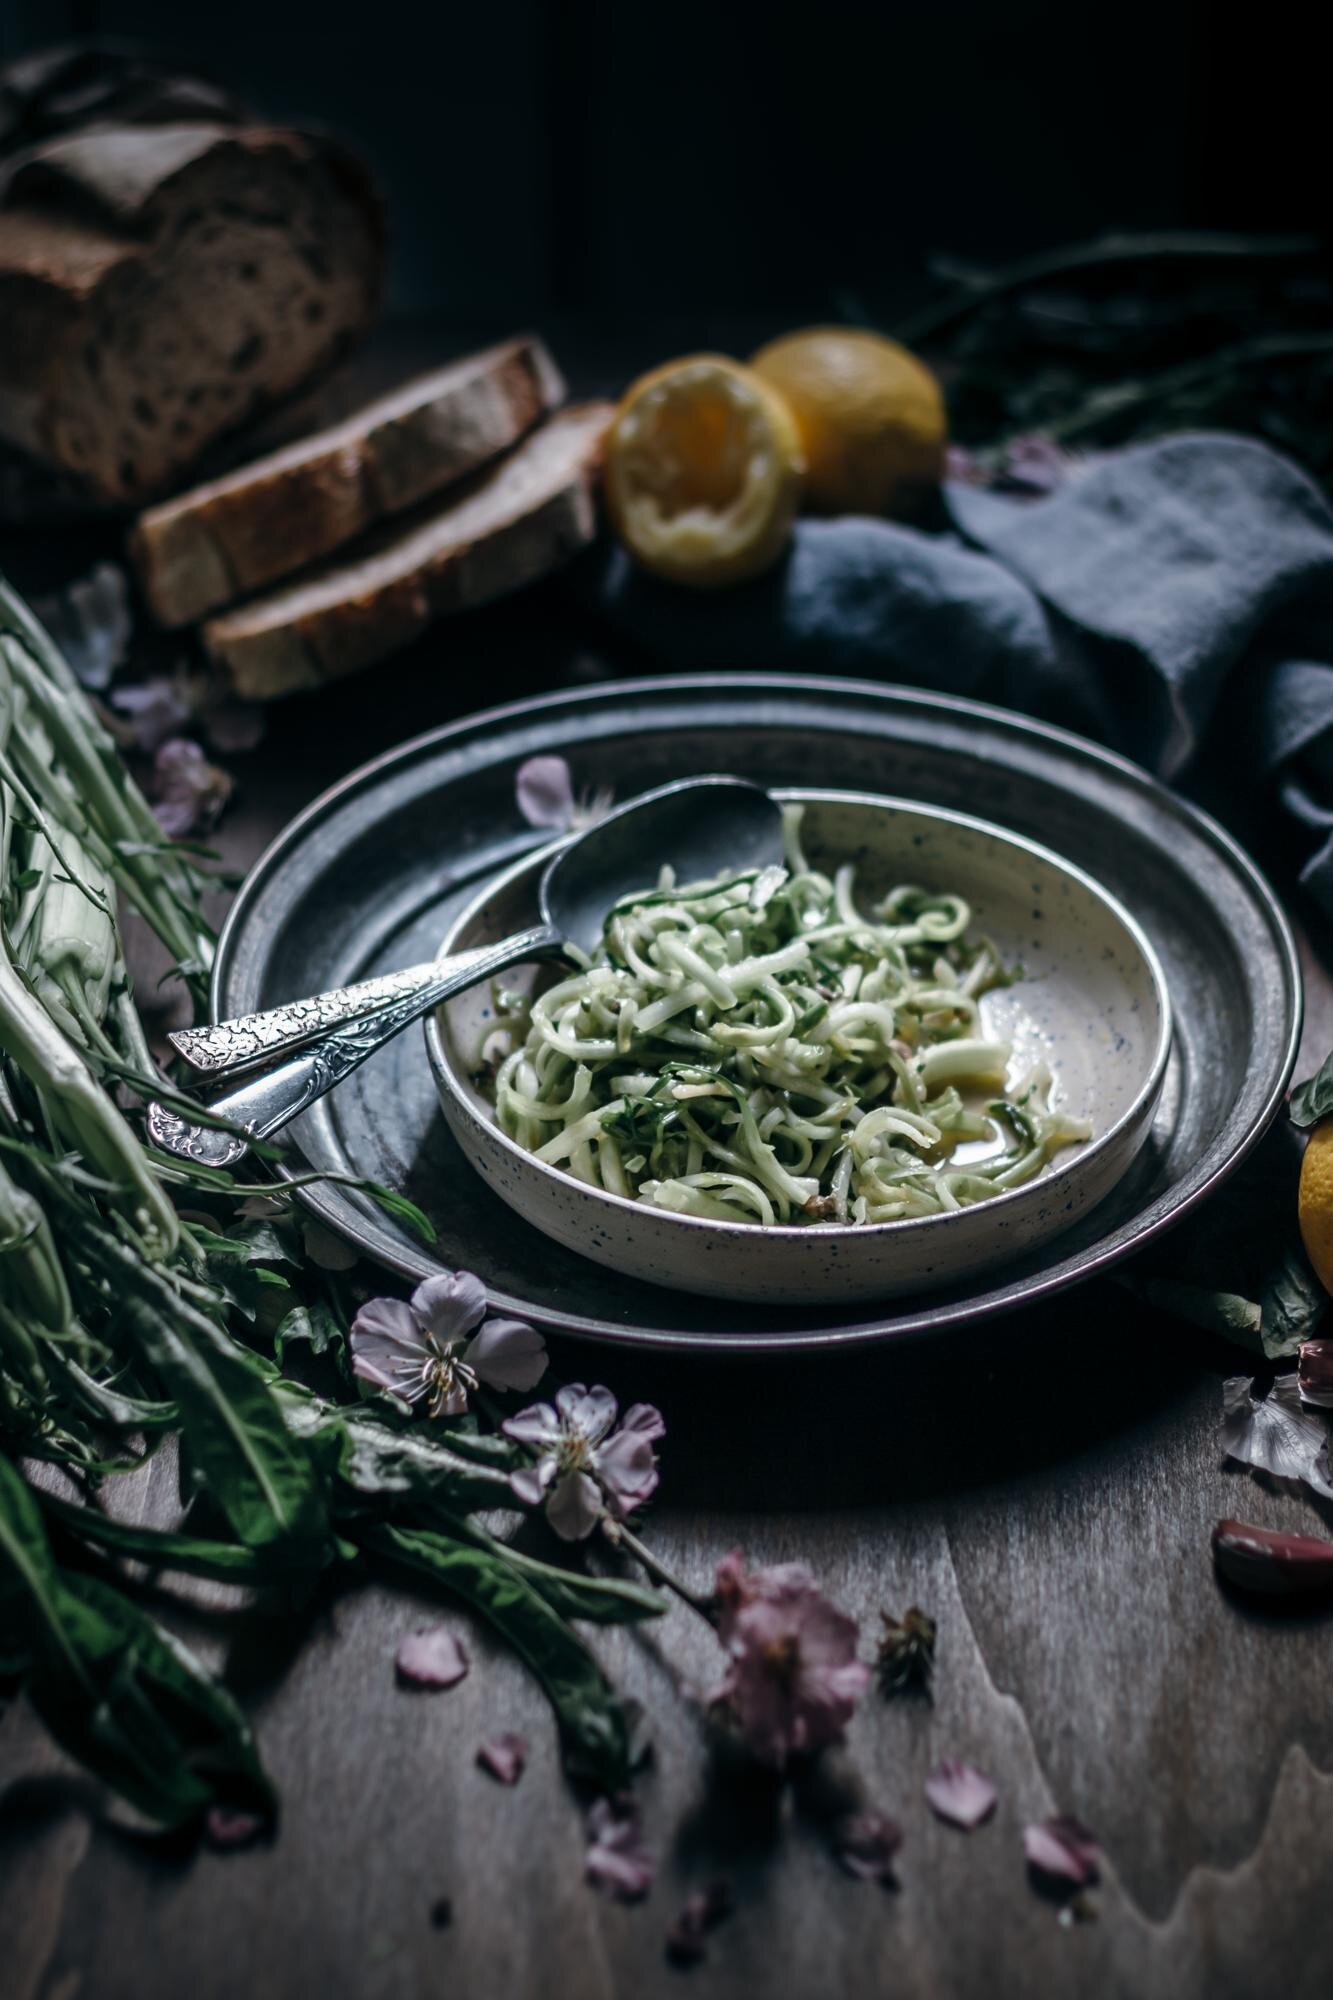 10 Striking Food Memories from 10+ Years of Living in Italy 2 13.jpg